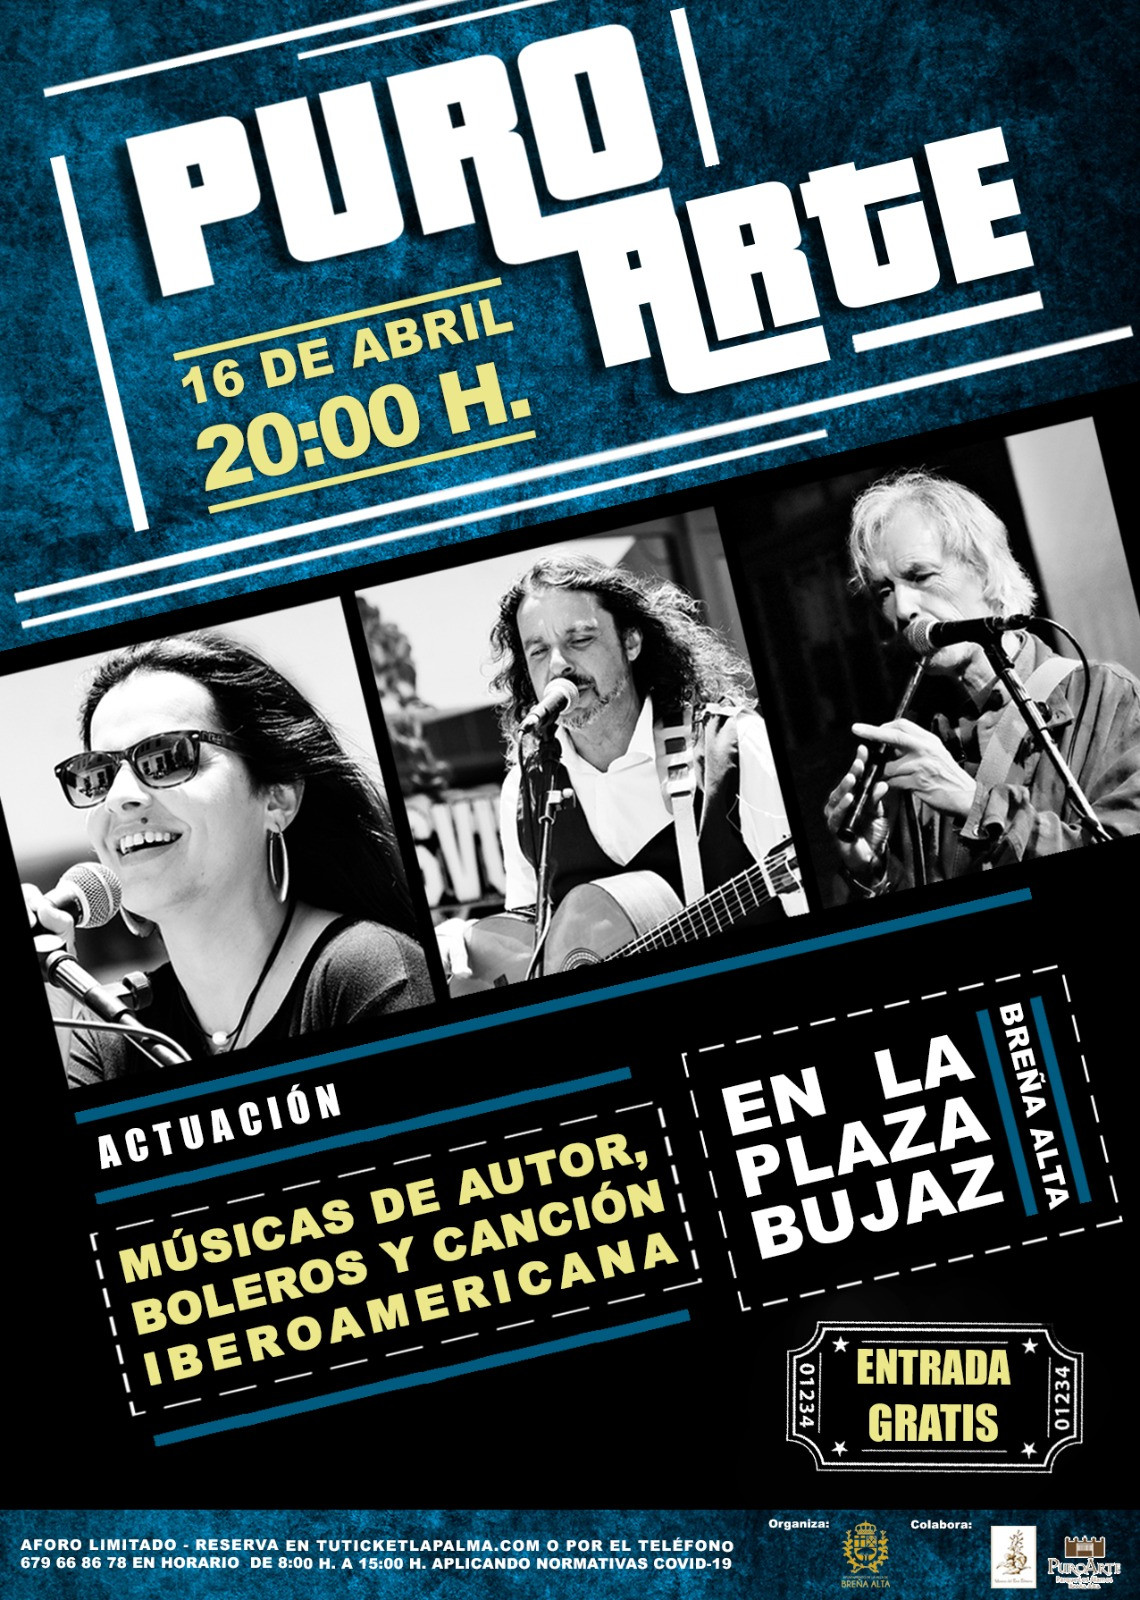 Imagen promocional del concierto este viernes en la Plaza de Bujaz de Breu00f1a Alta